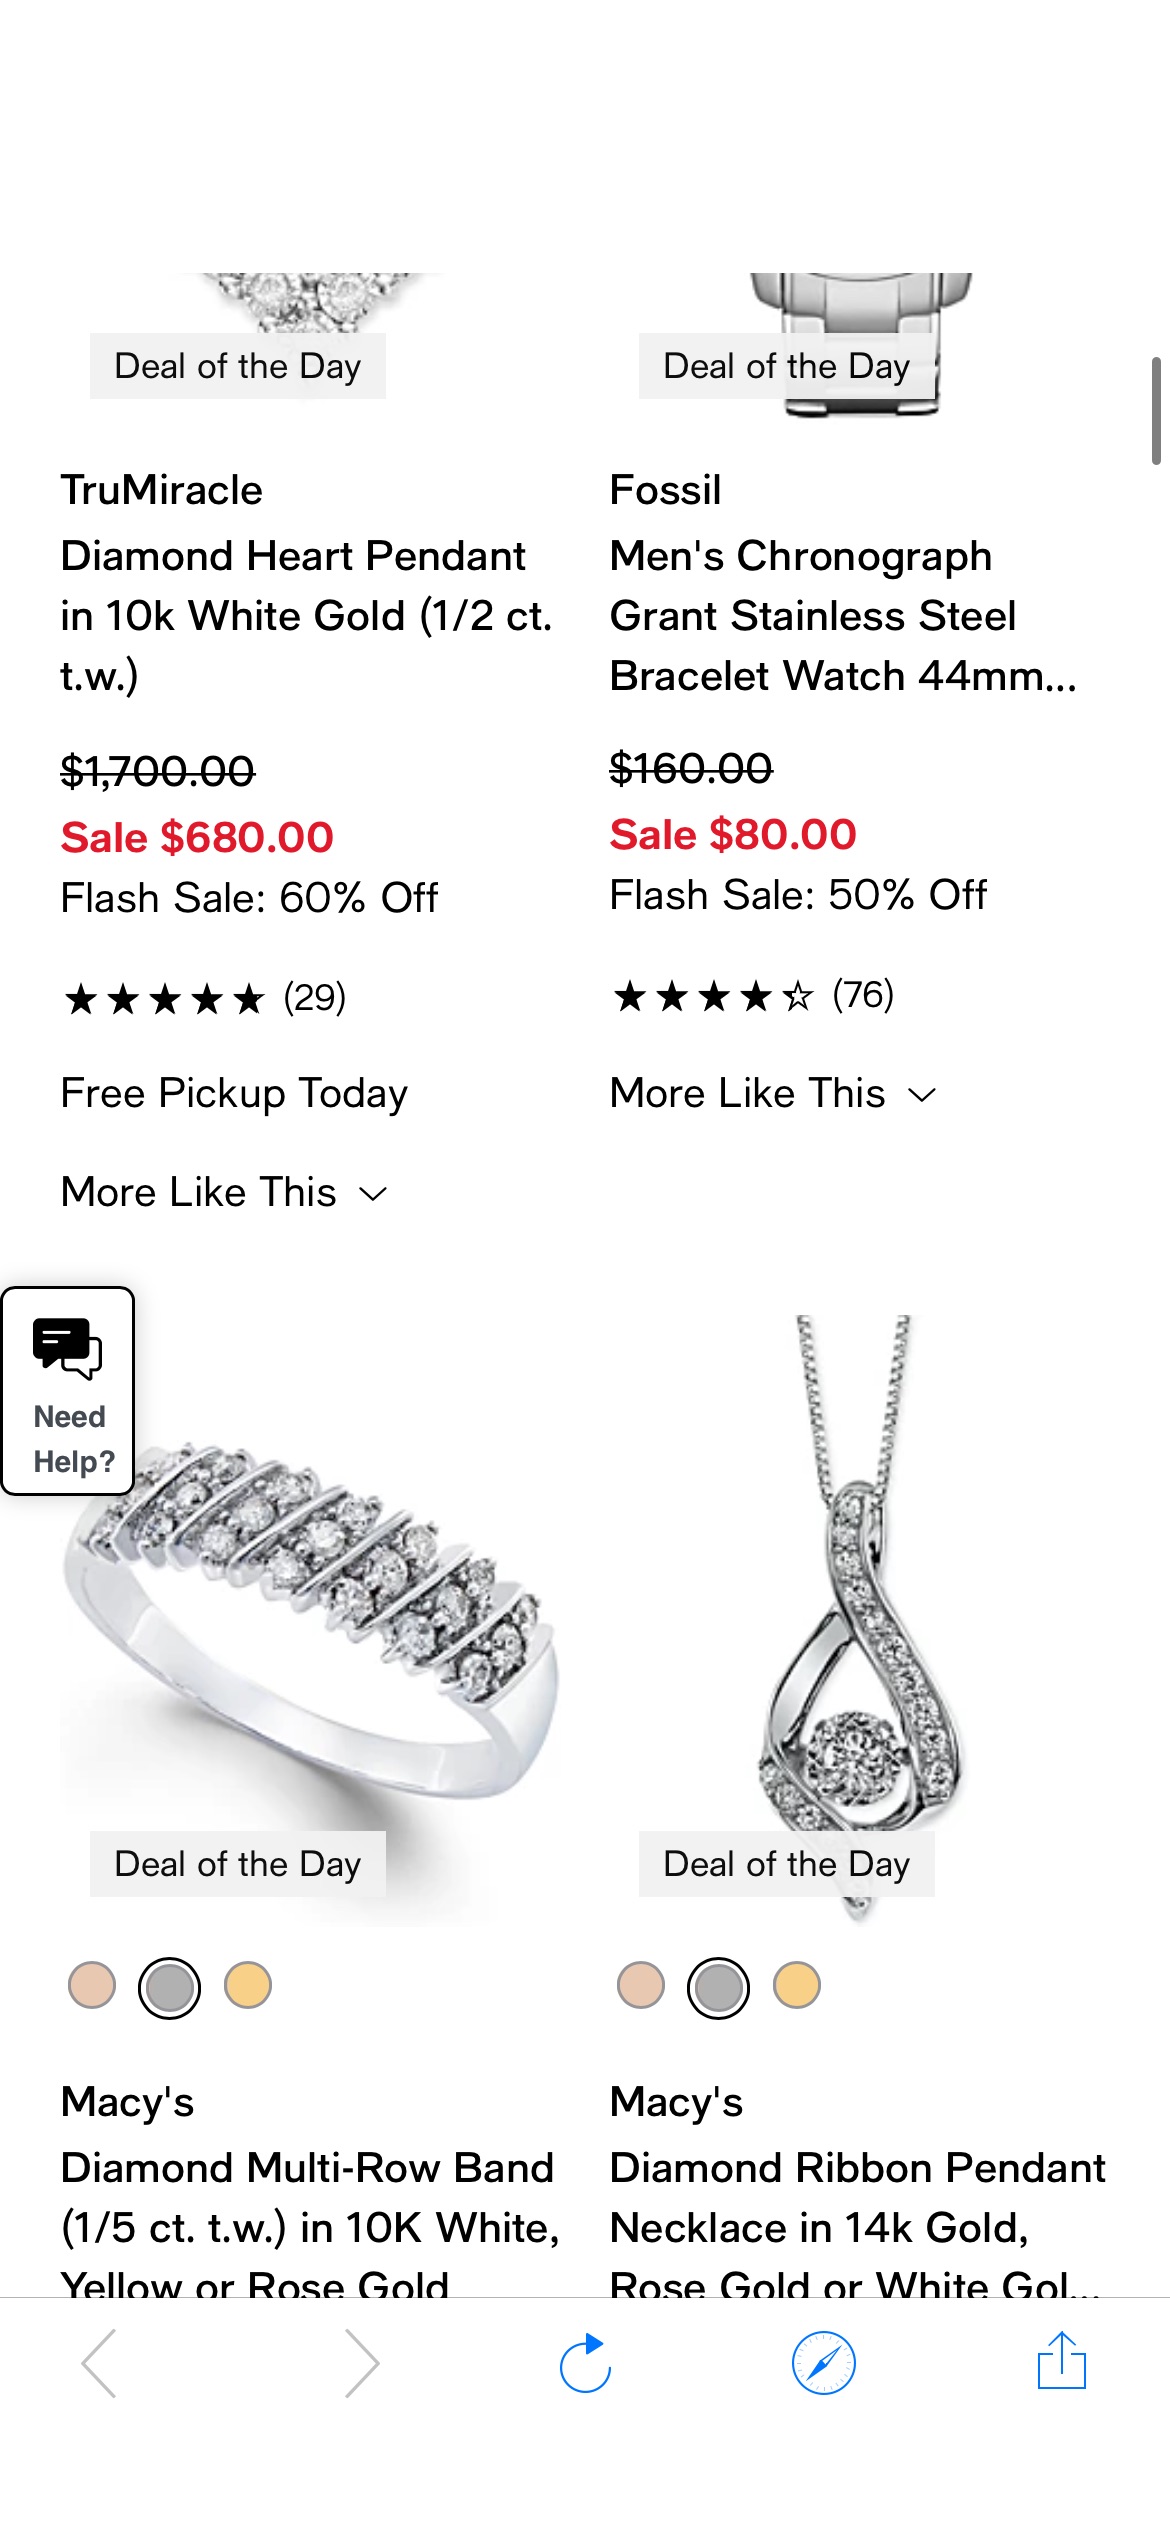 Jewelry & Watches - Flash Sale: 50-70% Off Jewelry & Watches - Macy's 梅西百货：闪购珠宝和手表 50-70% 的折扣。 网上购物，今天只为节省大笔费用